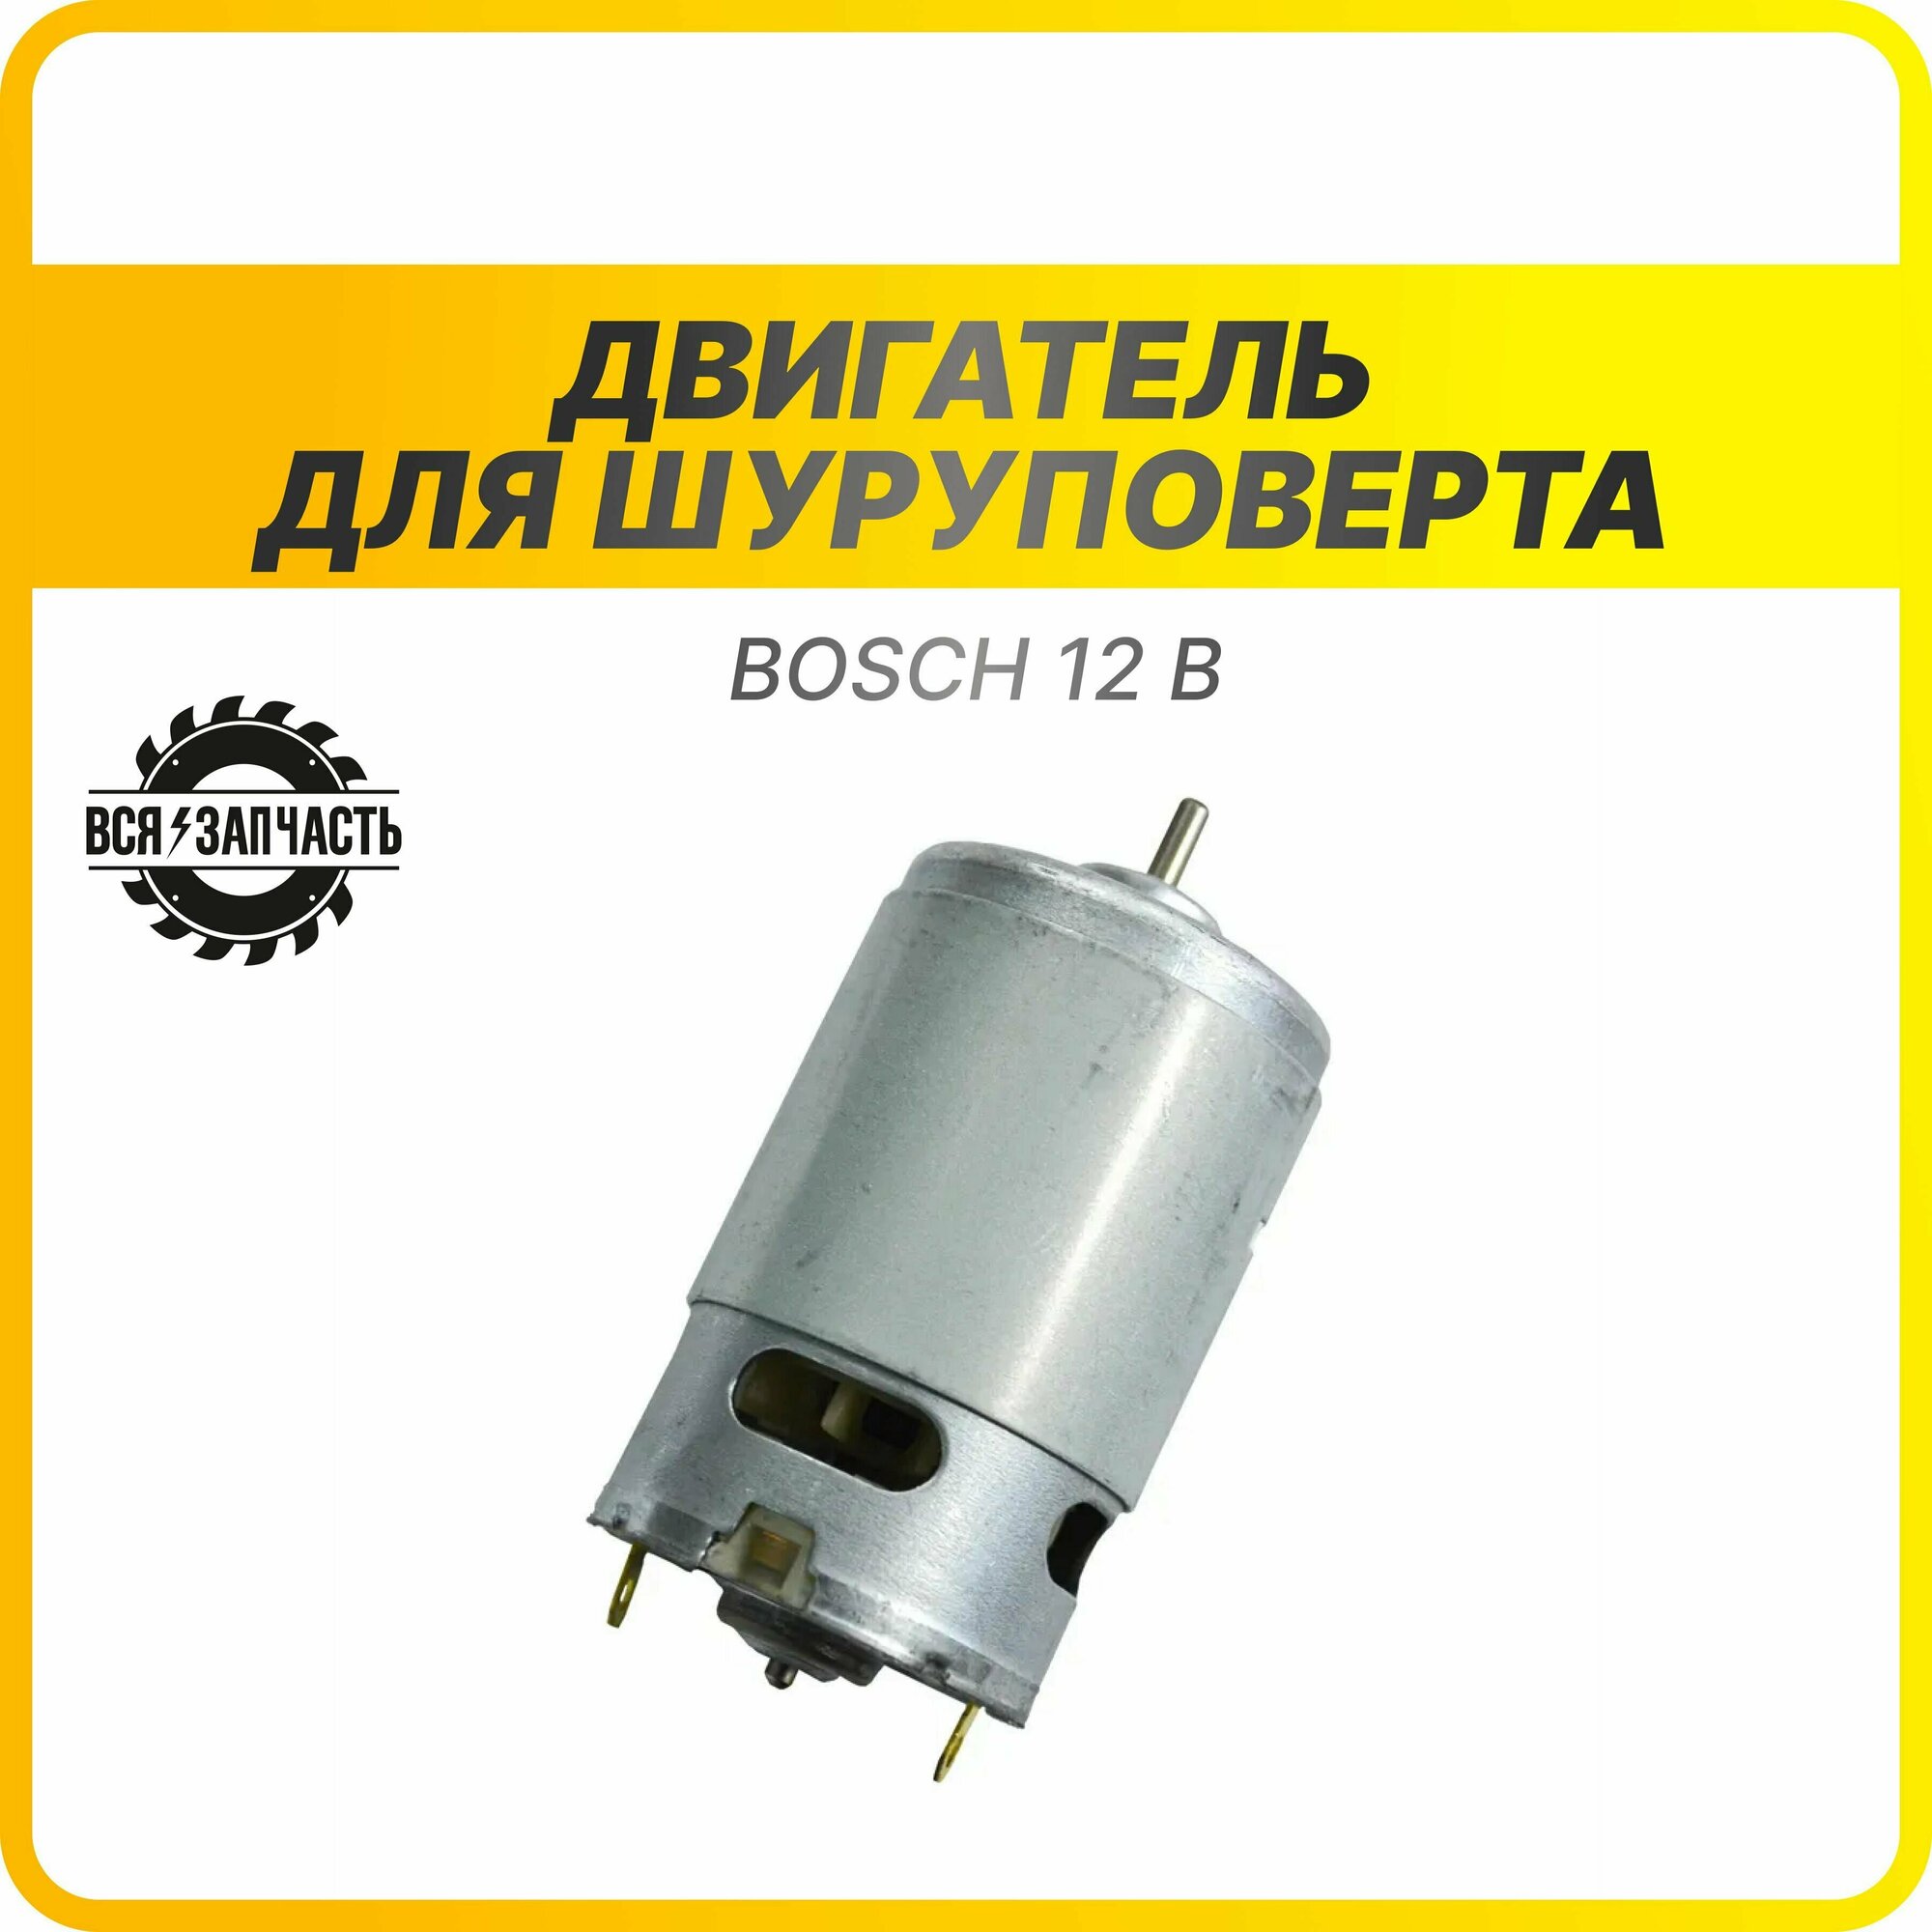 Двигатель 12 В для шуруповерта Bosch без ответной шестерни - 010191 (12V)VZ